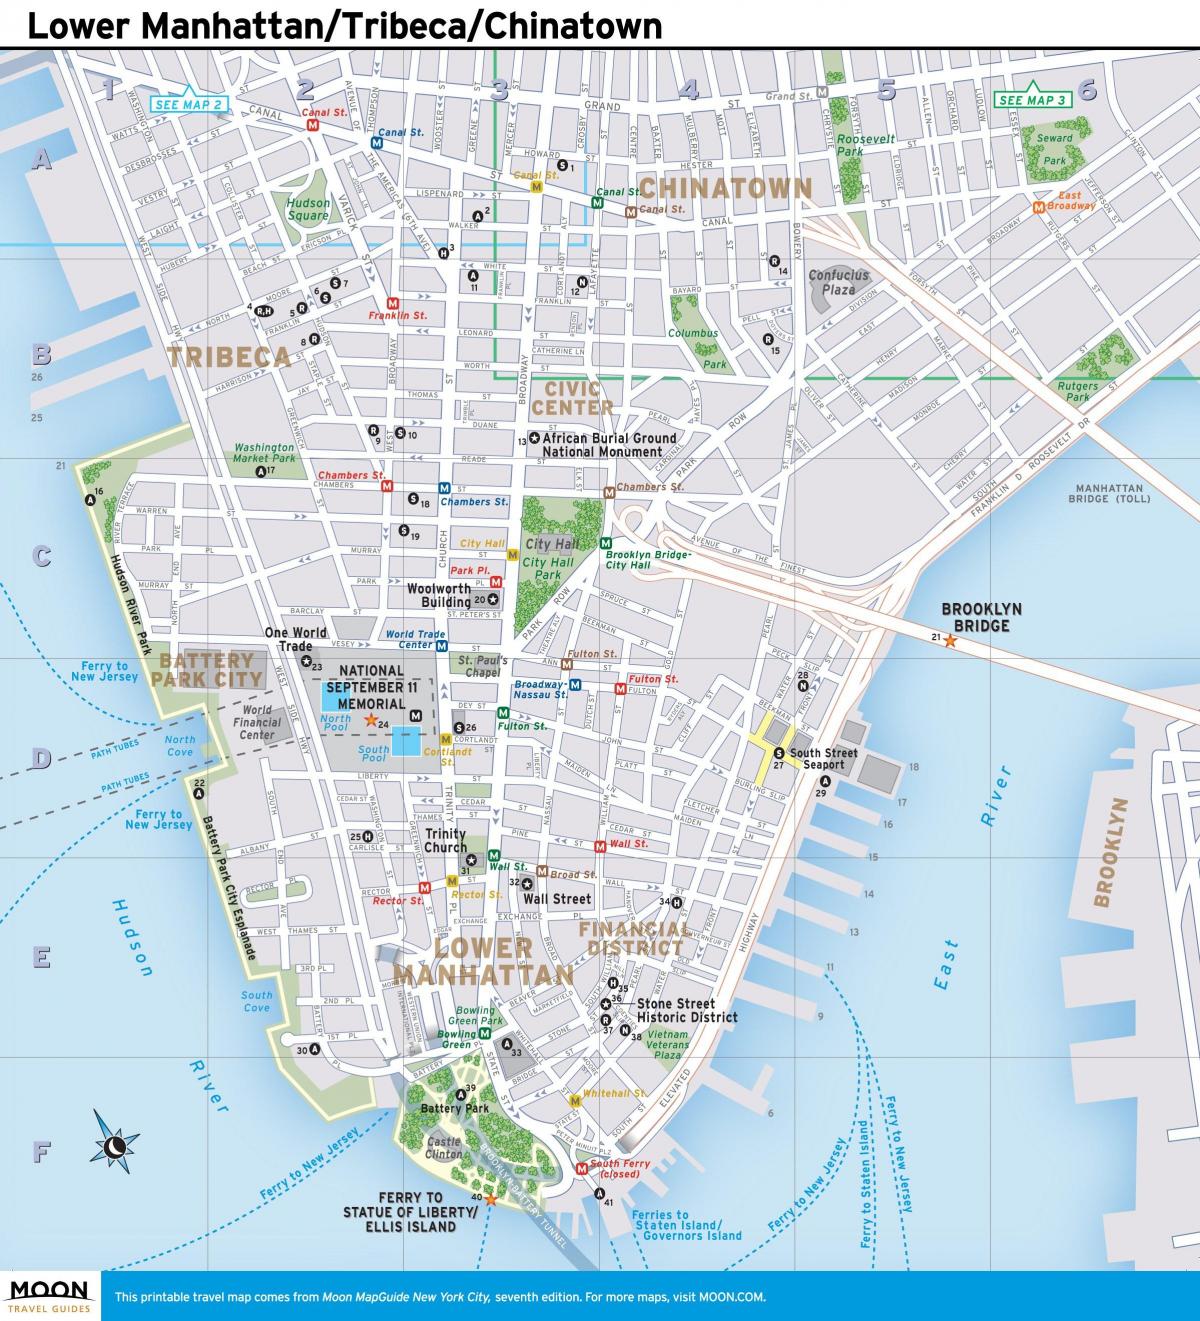 térkép alsó Manhattan, ny